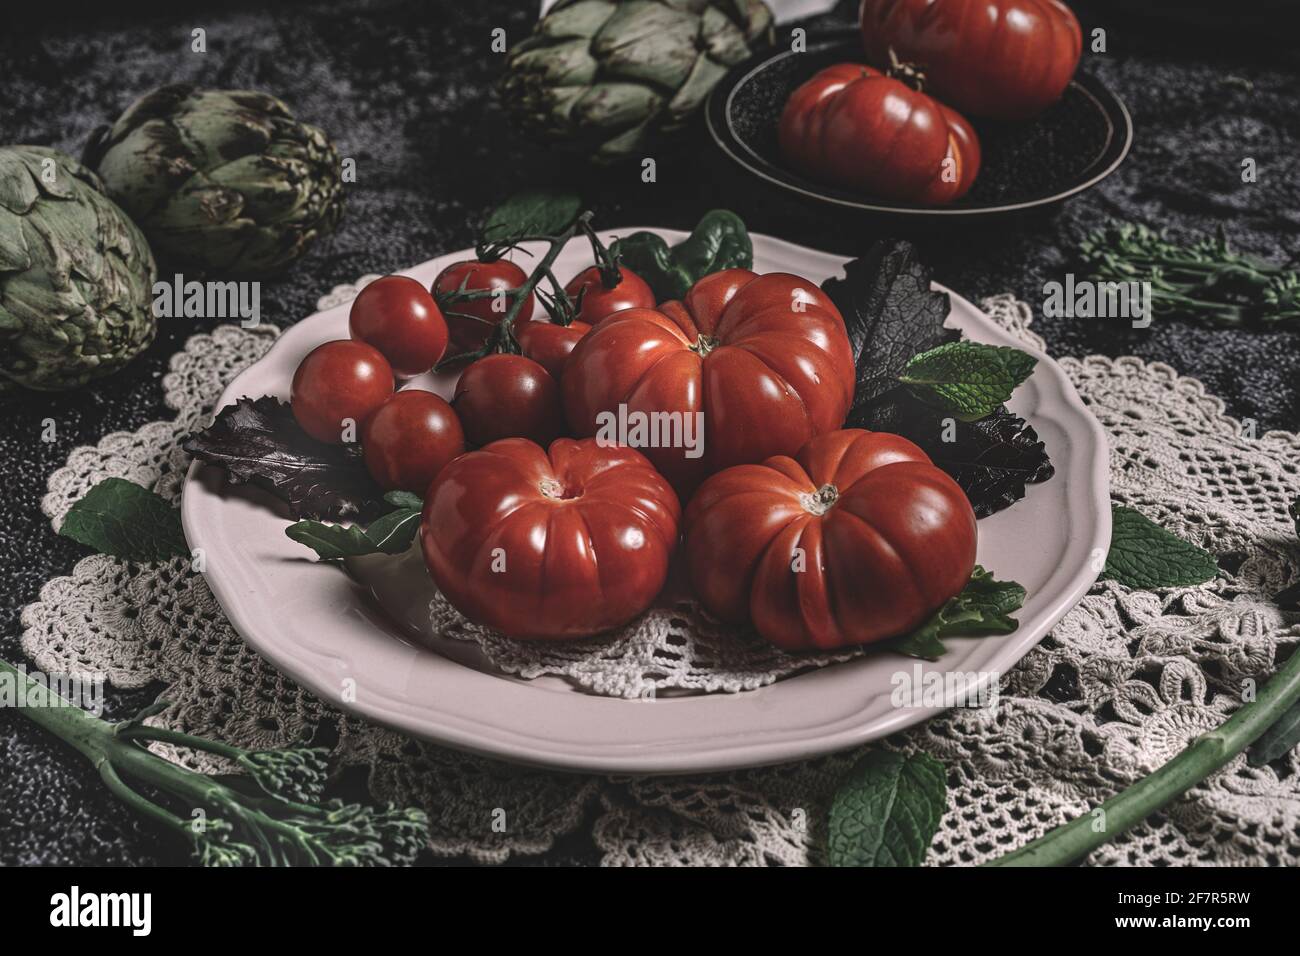 Moody fotografia di cibo scuro di pomodori raf freschi, bimi e carciofi. Immagine di natura morta con un aspetto vintage e uno sfondo nero. Foto Stock